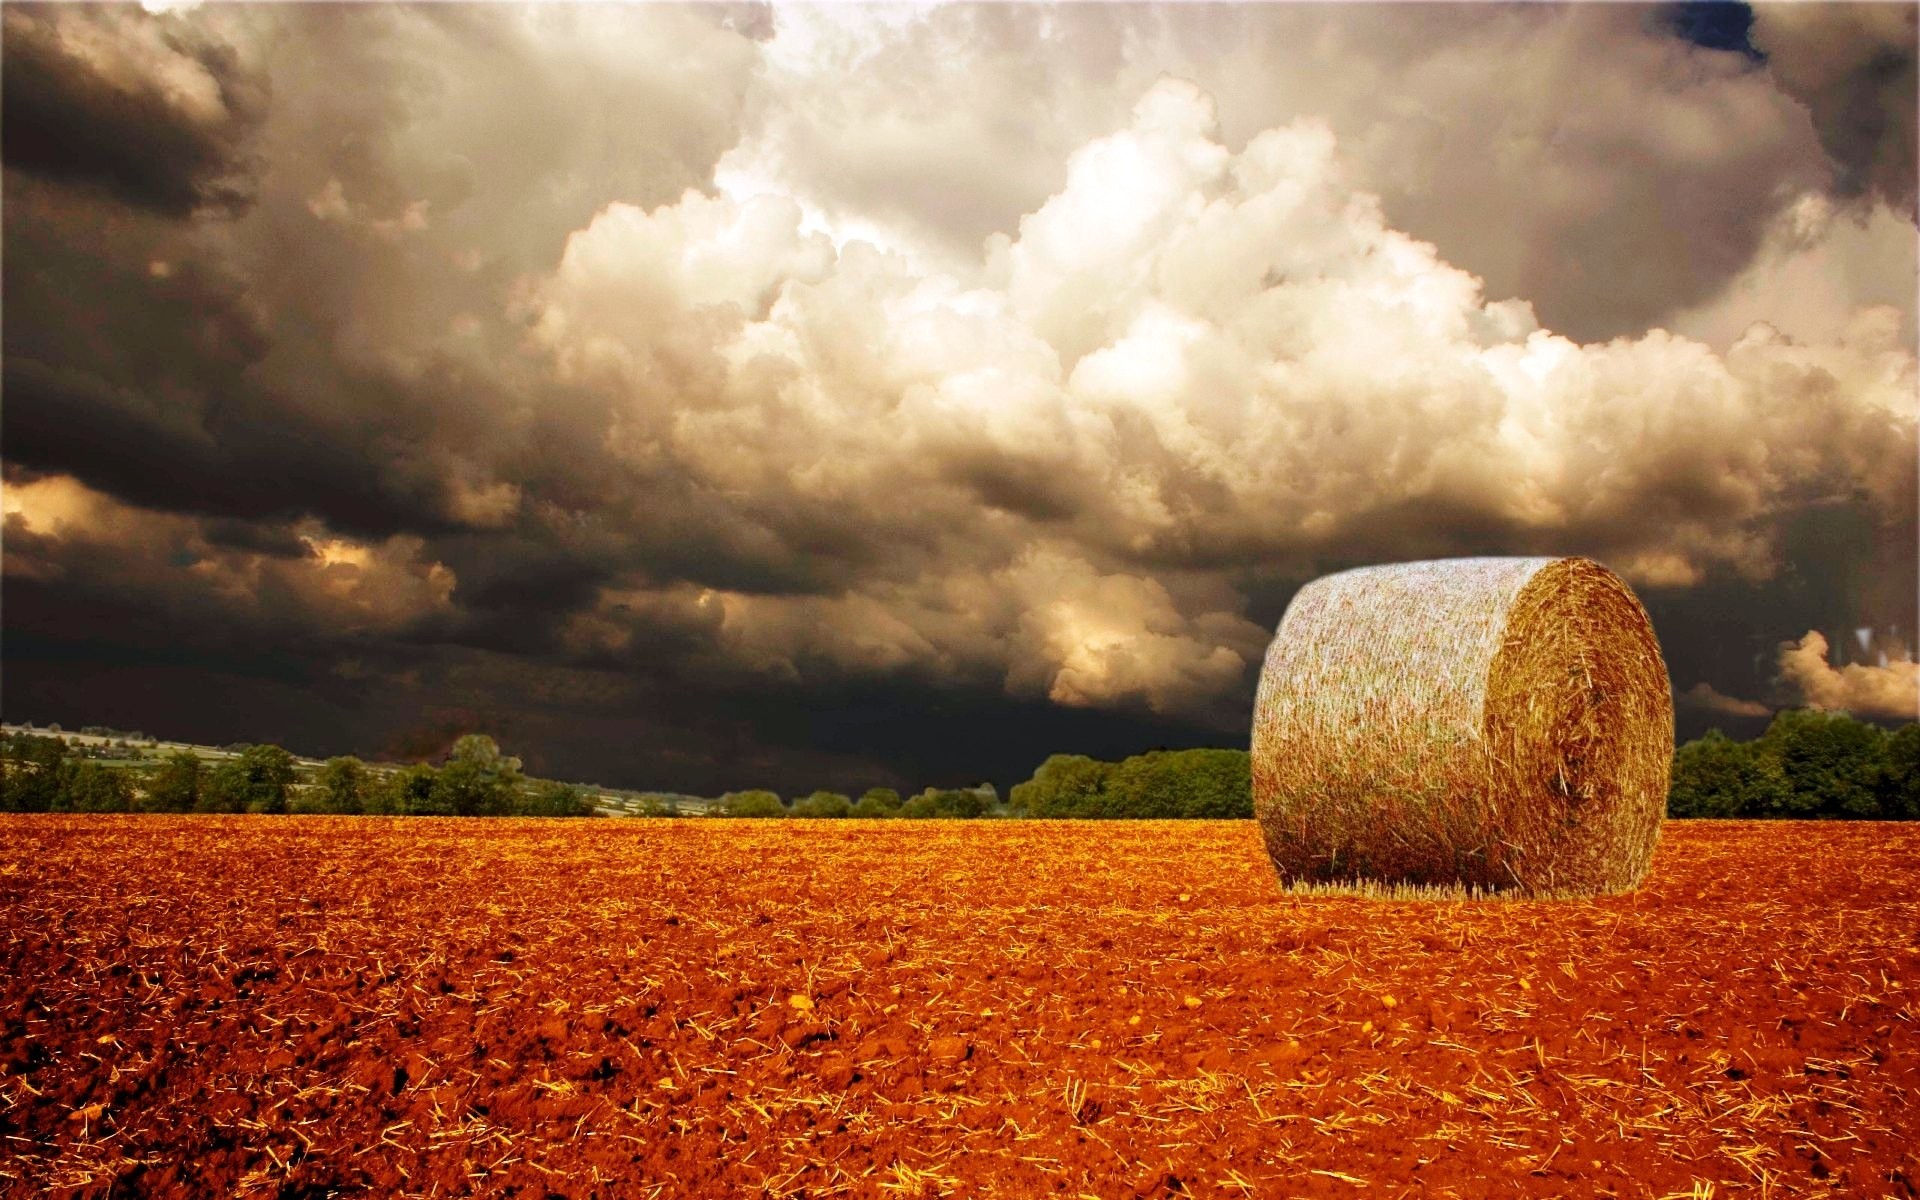 осень небо пшеницы сельских сельское хозяйство осень закат на открытом воздухе сельской местности природа пастбище кукуруза хлопья пейзаж золото